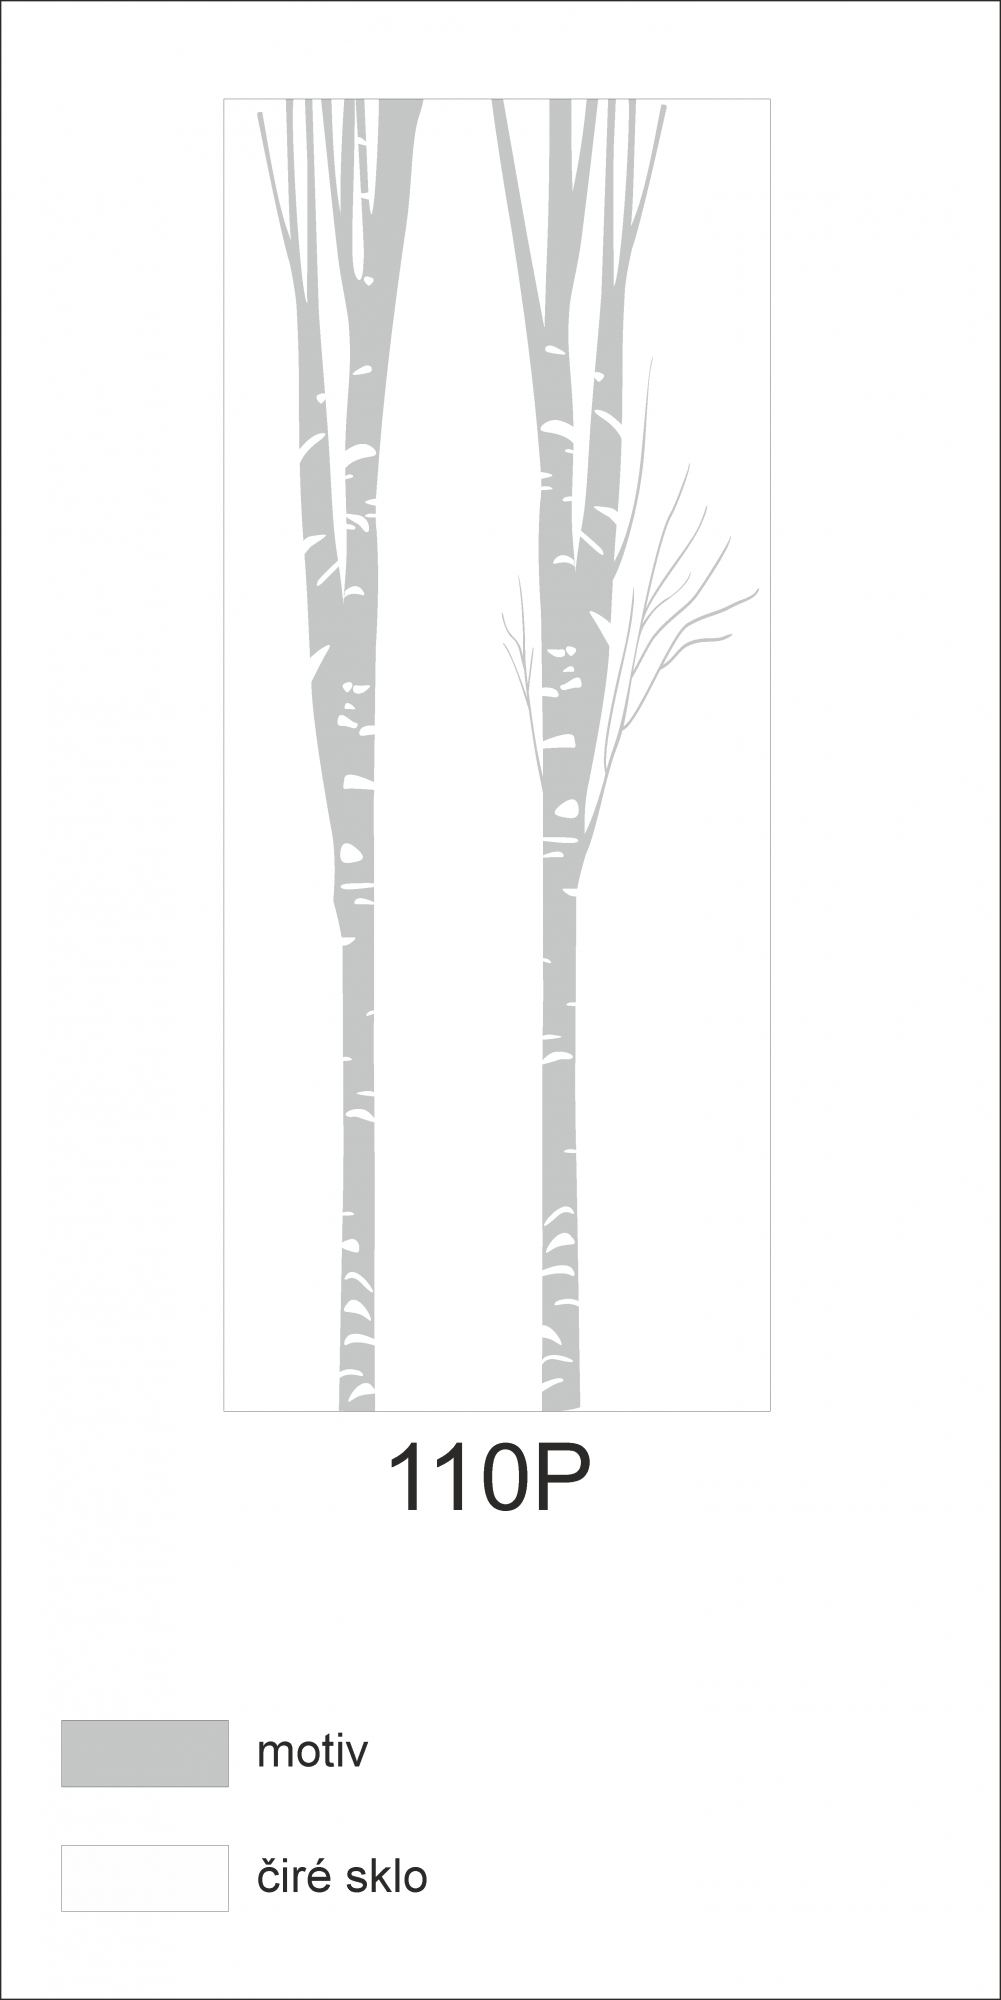 Možný motiv na skleněných dveřích nebo skleněných stěnách 110P - motiv stromů